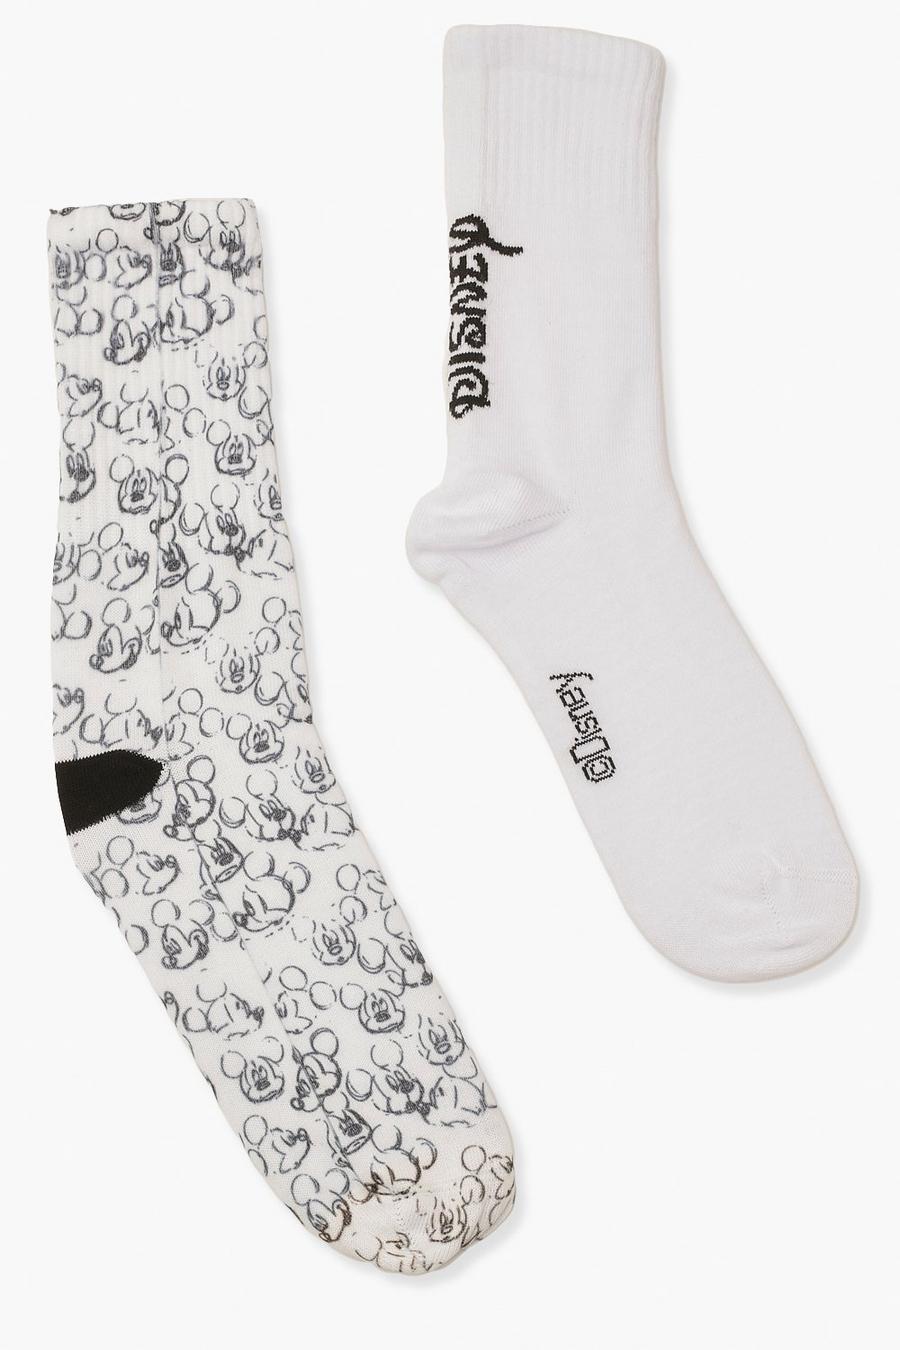 שחור/לבן מארז 2 זוגות גרביים עם הדפס Disney Mickey Mouse image number 1